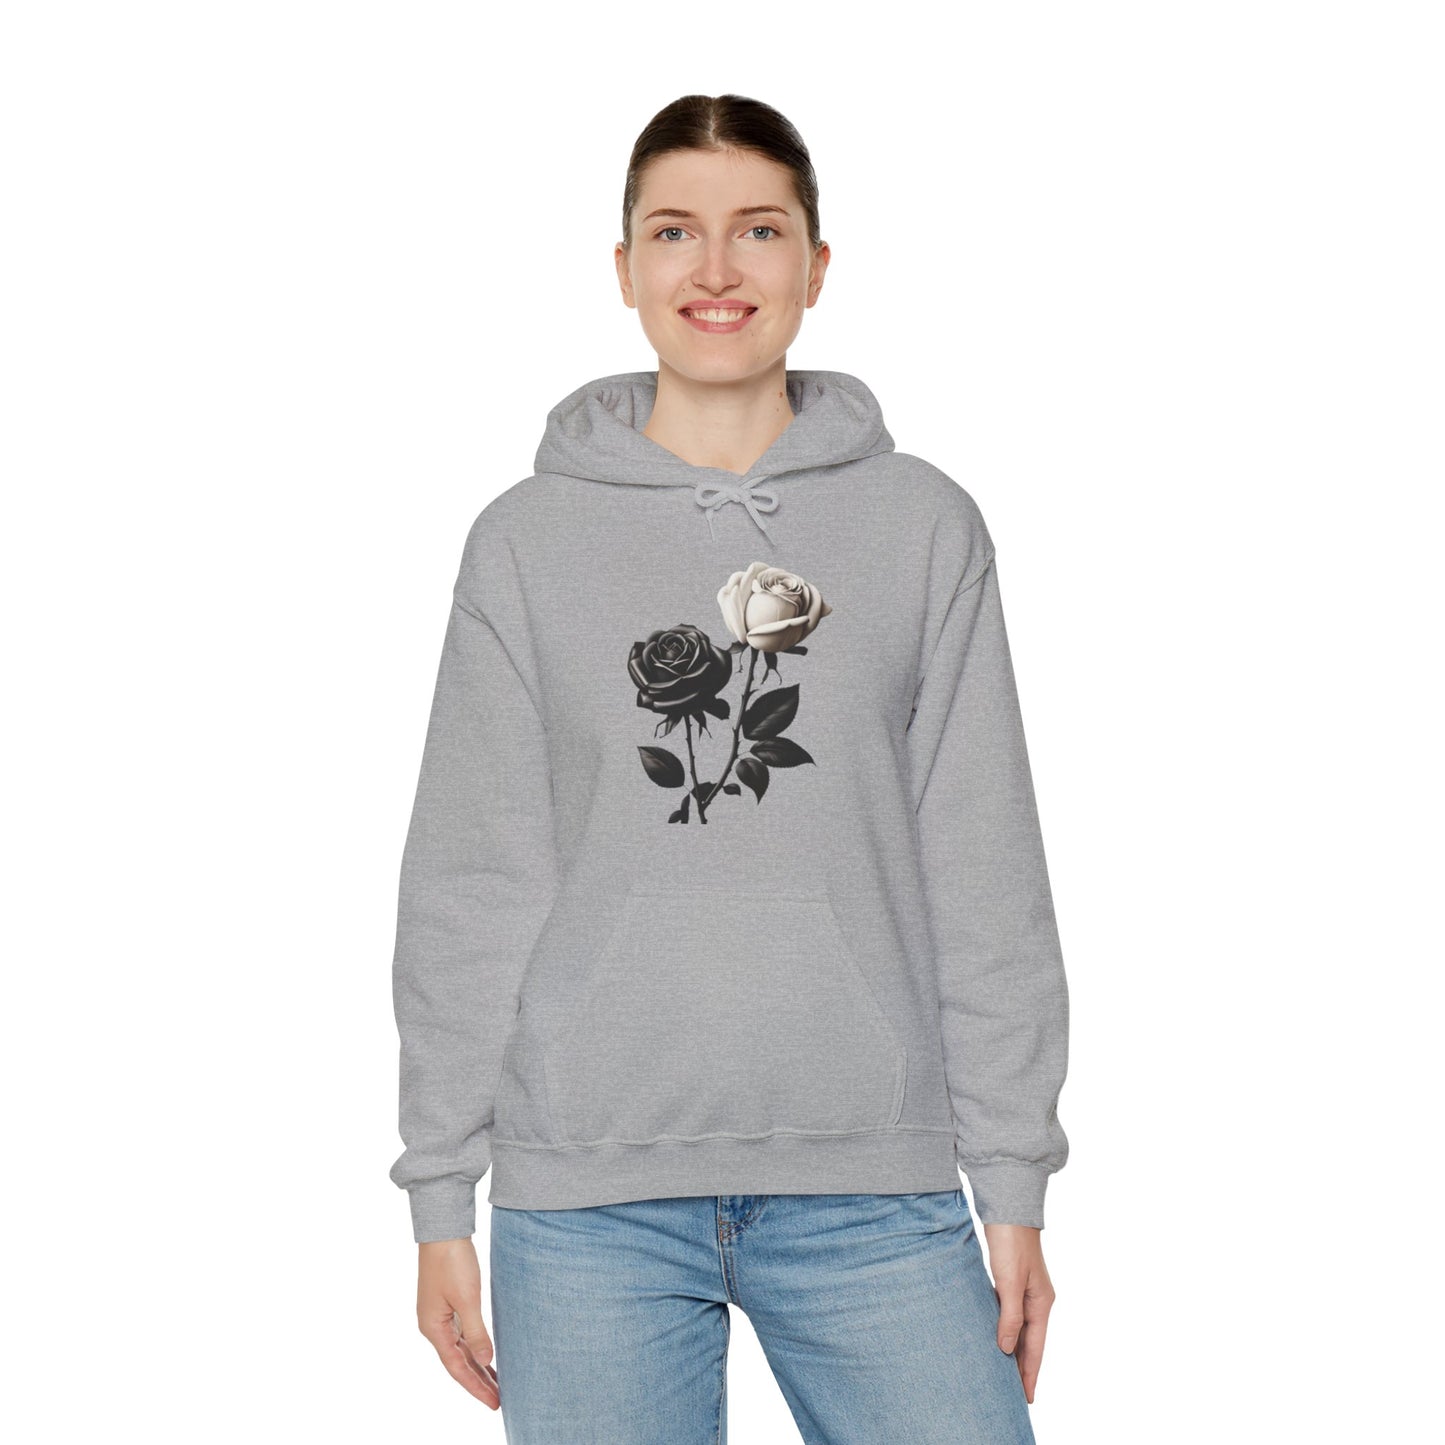 Black and White Rose - Unisex Hooded Sweatshirt